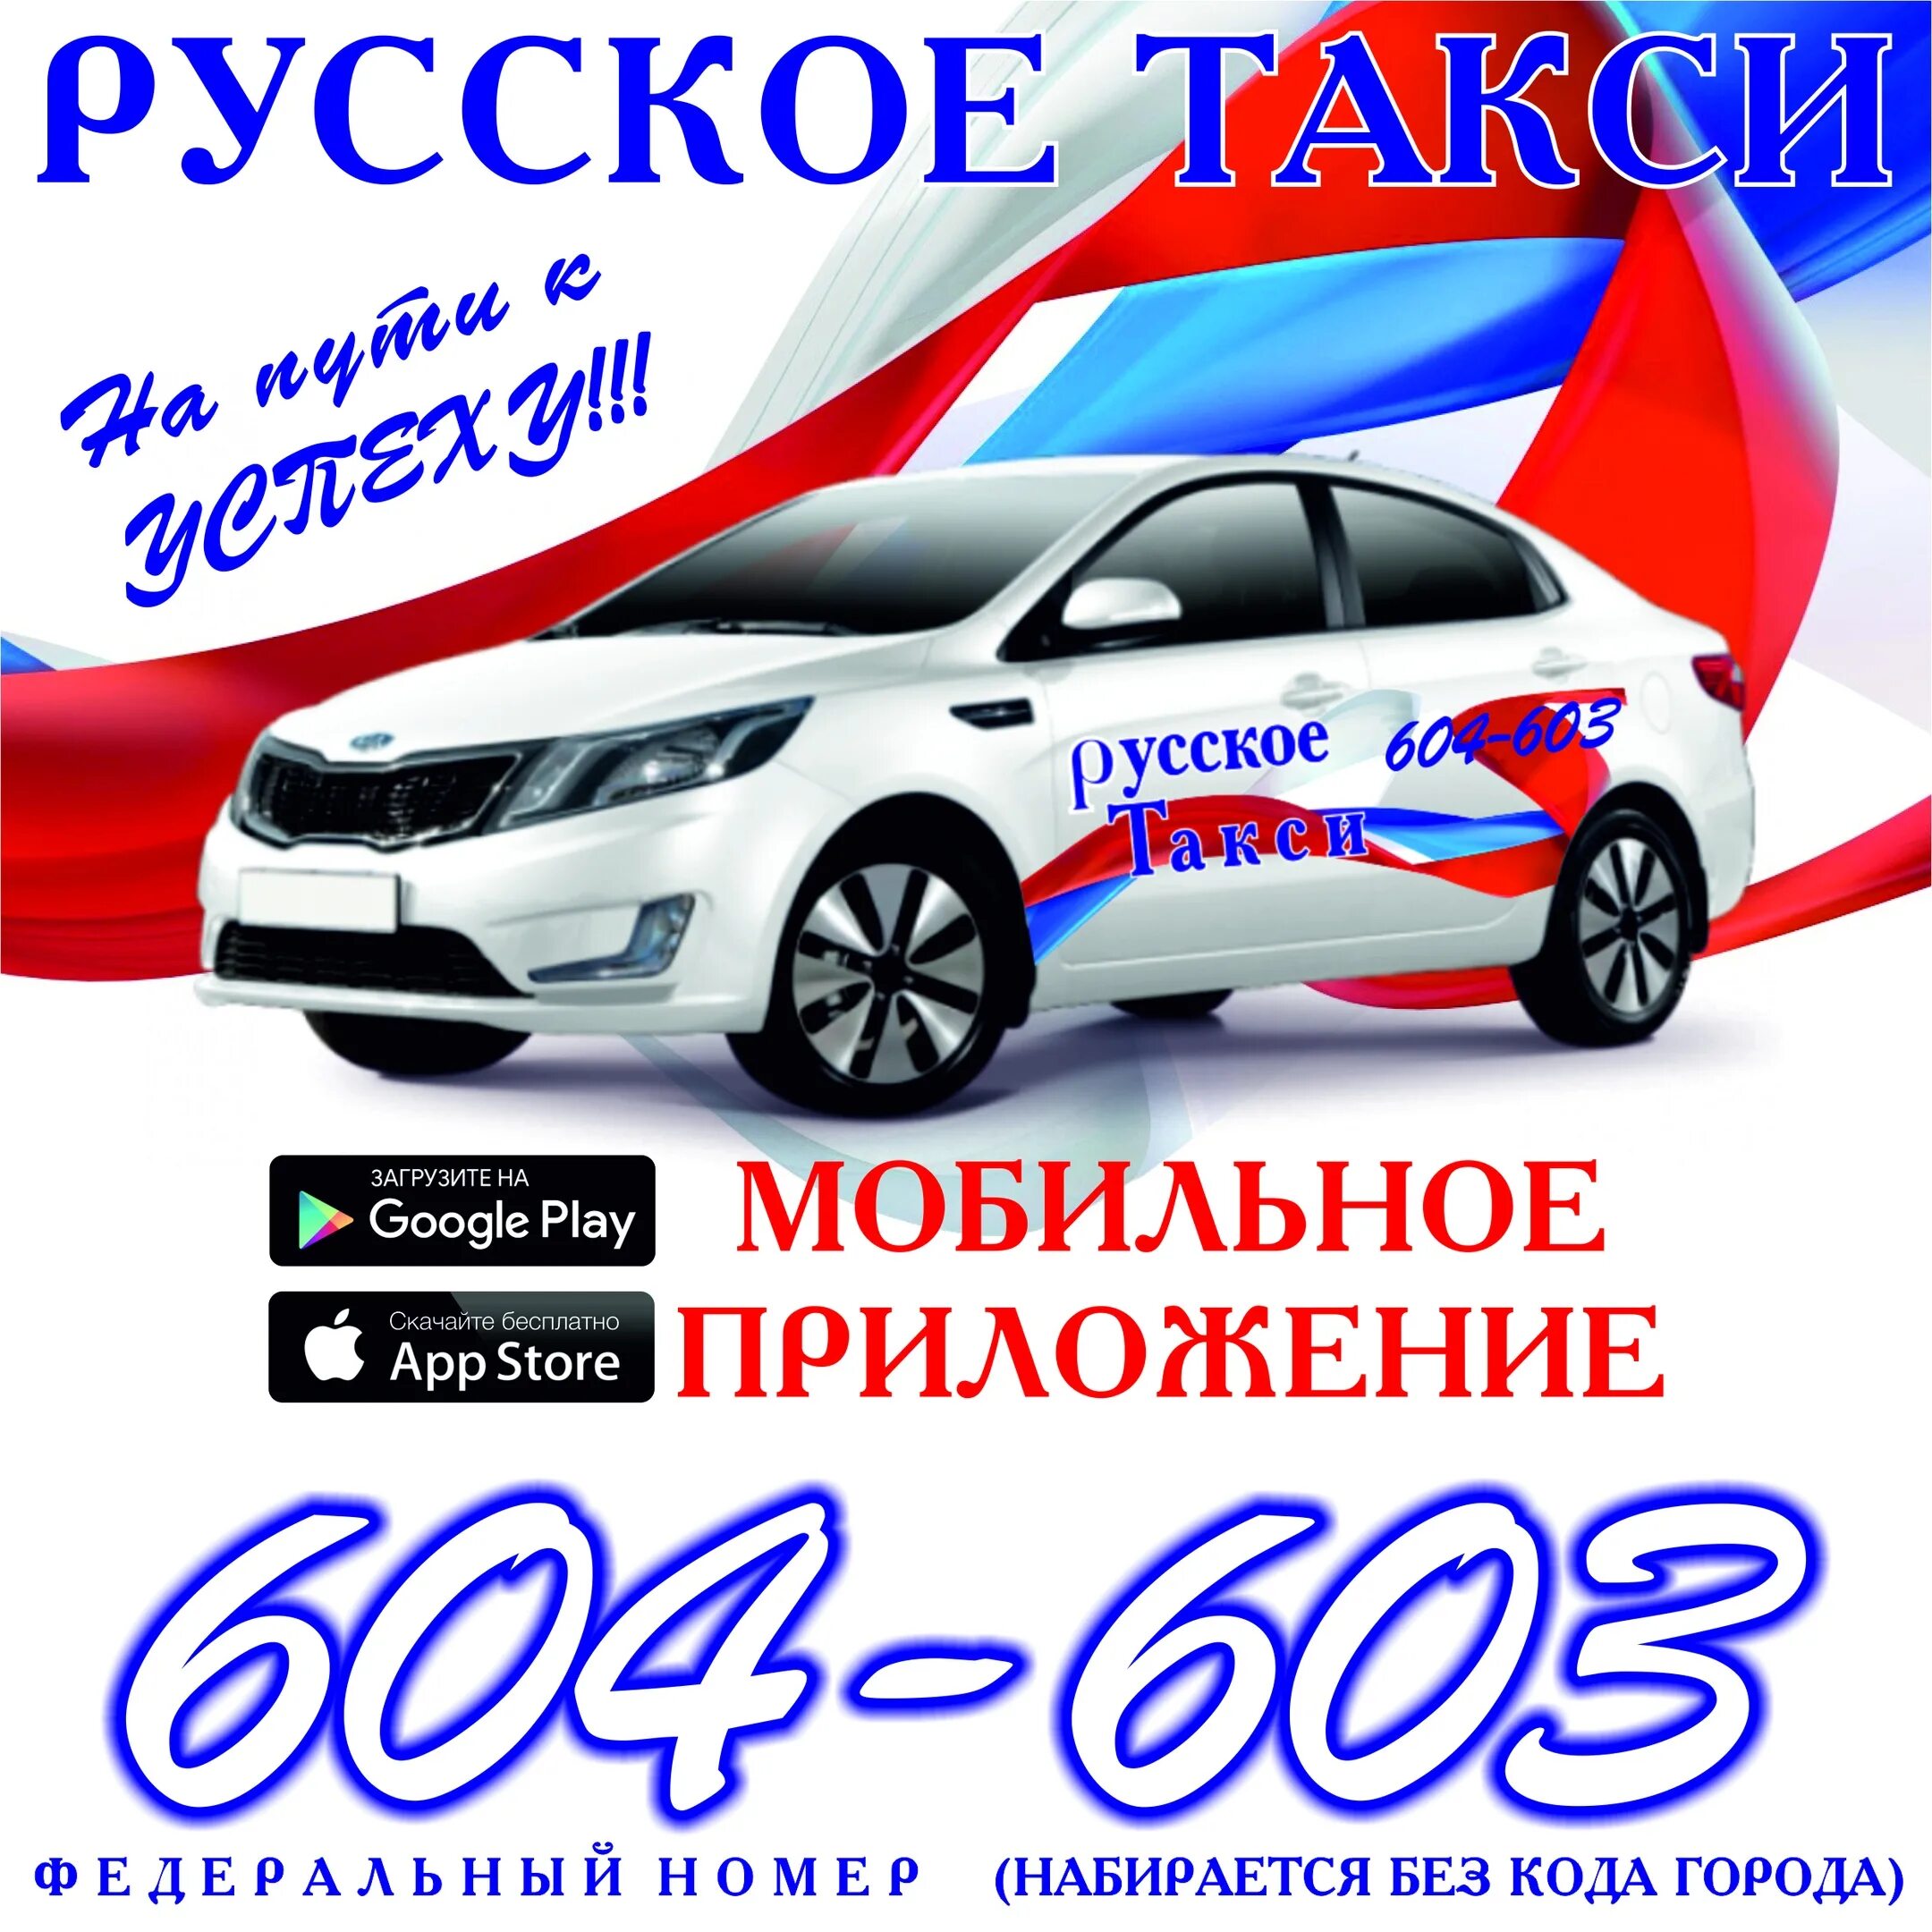 Русское такси. Российское такси. Такси Удомля. Номер такси русское.